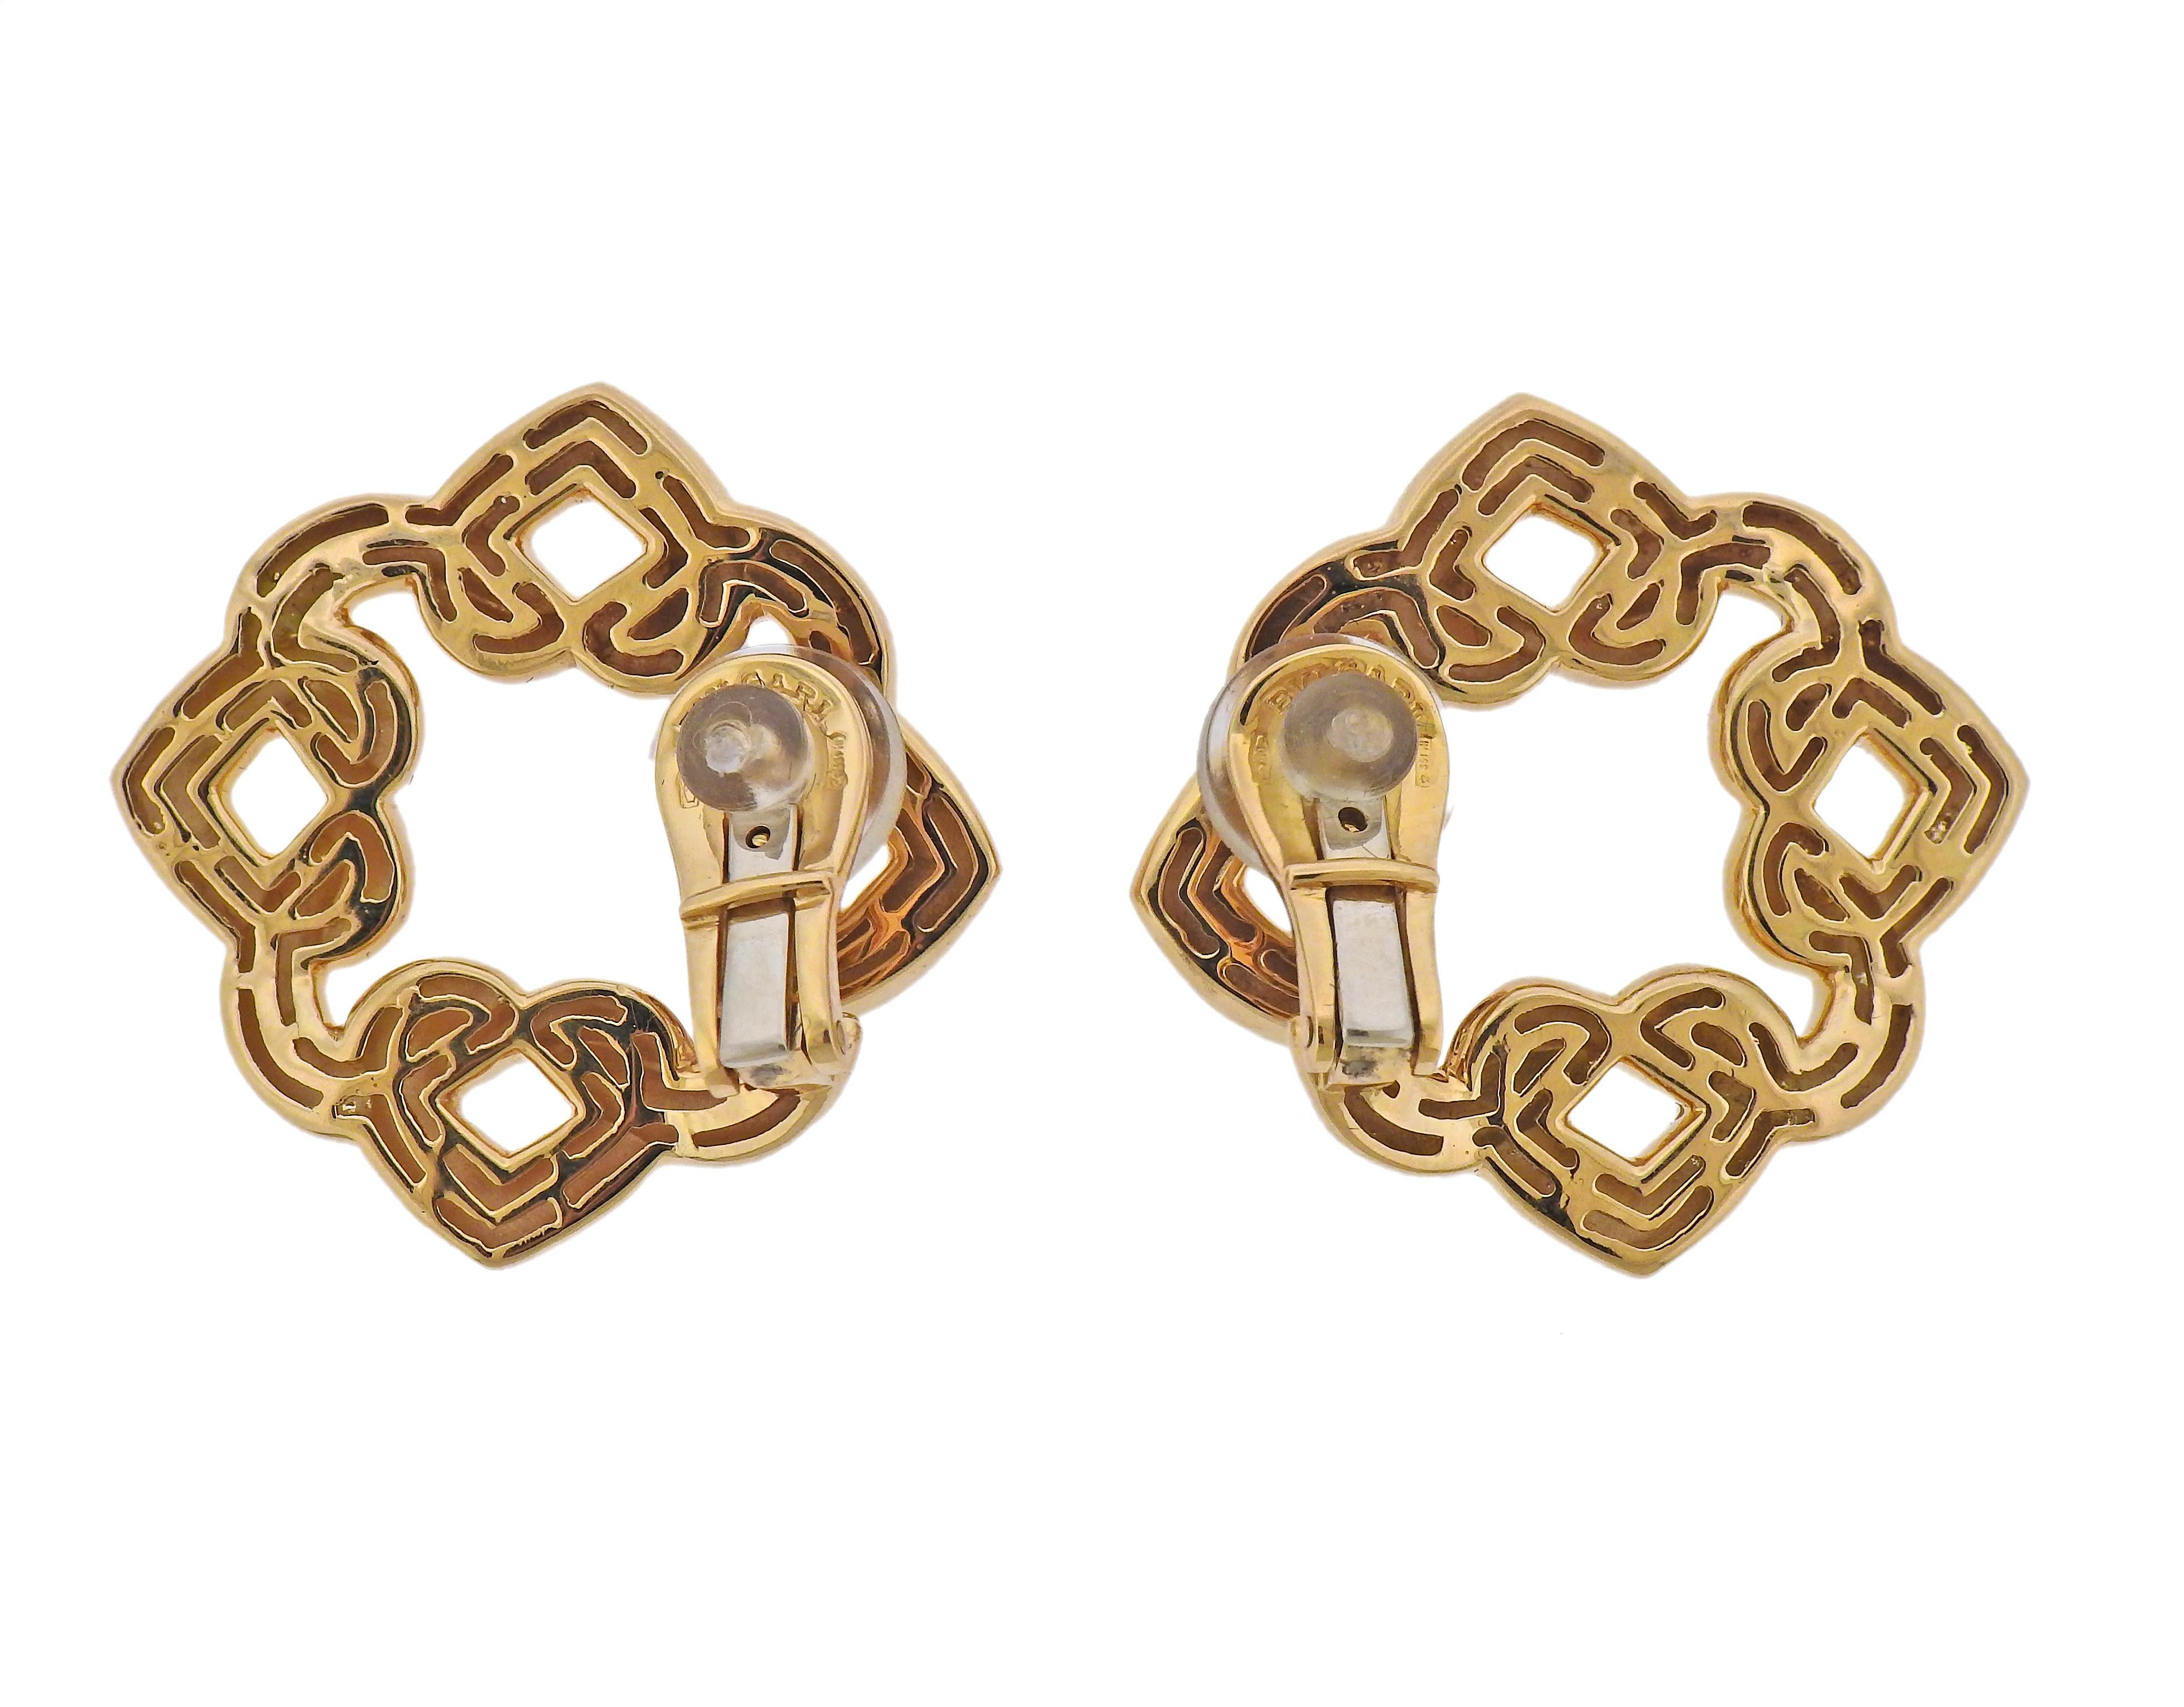 Ein Paar Bvlgari Doppio Cuore-Ohrringe aus 18 Karat Gelbgold. Maße: 26 mm x 26 mm. Gezeichnet: Bvlgari, 750, italienische Marke. Gewicht - 18,2 Gramm.